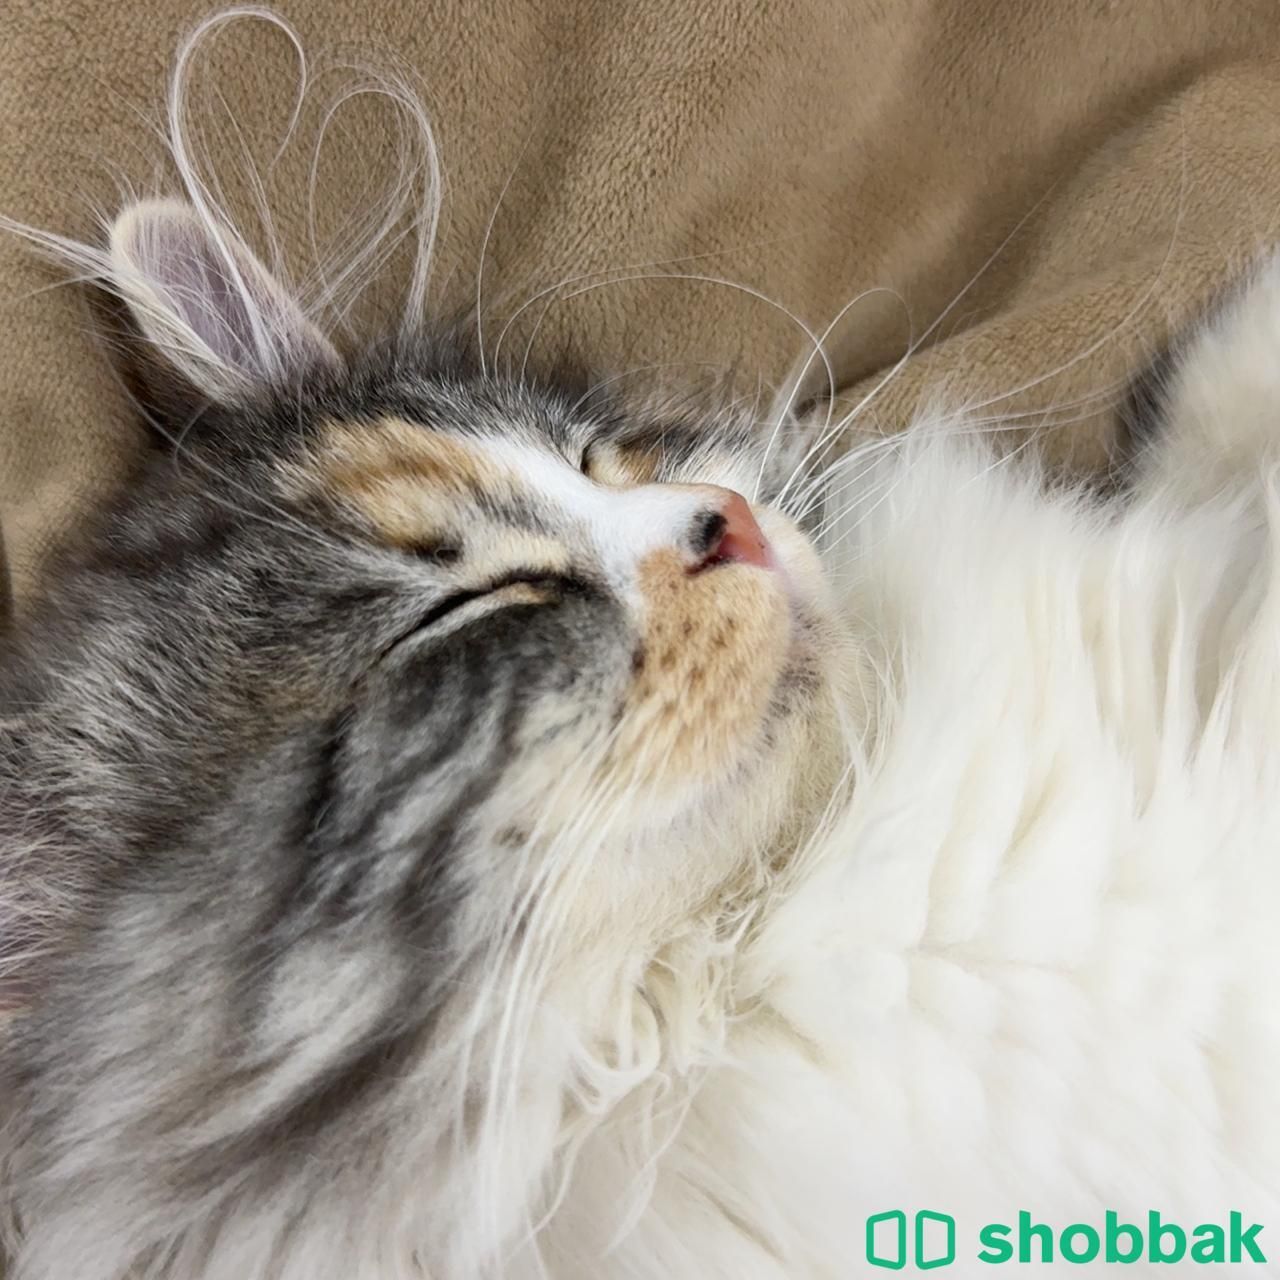 قطة شيرازية للبيع  Shobbak Saudi Arabia